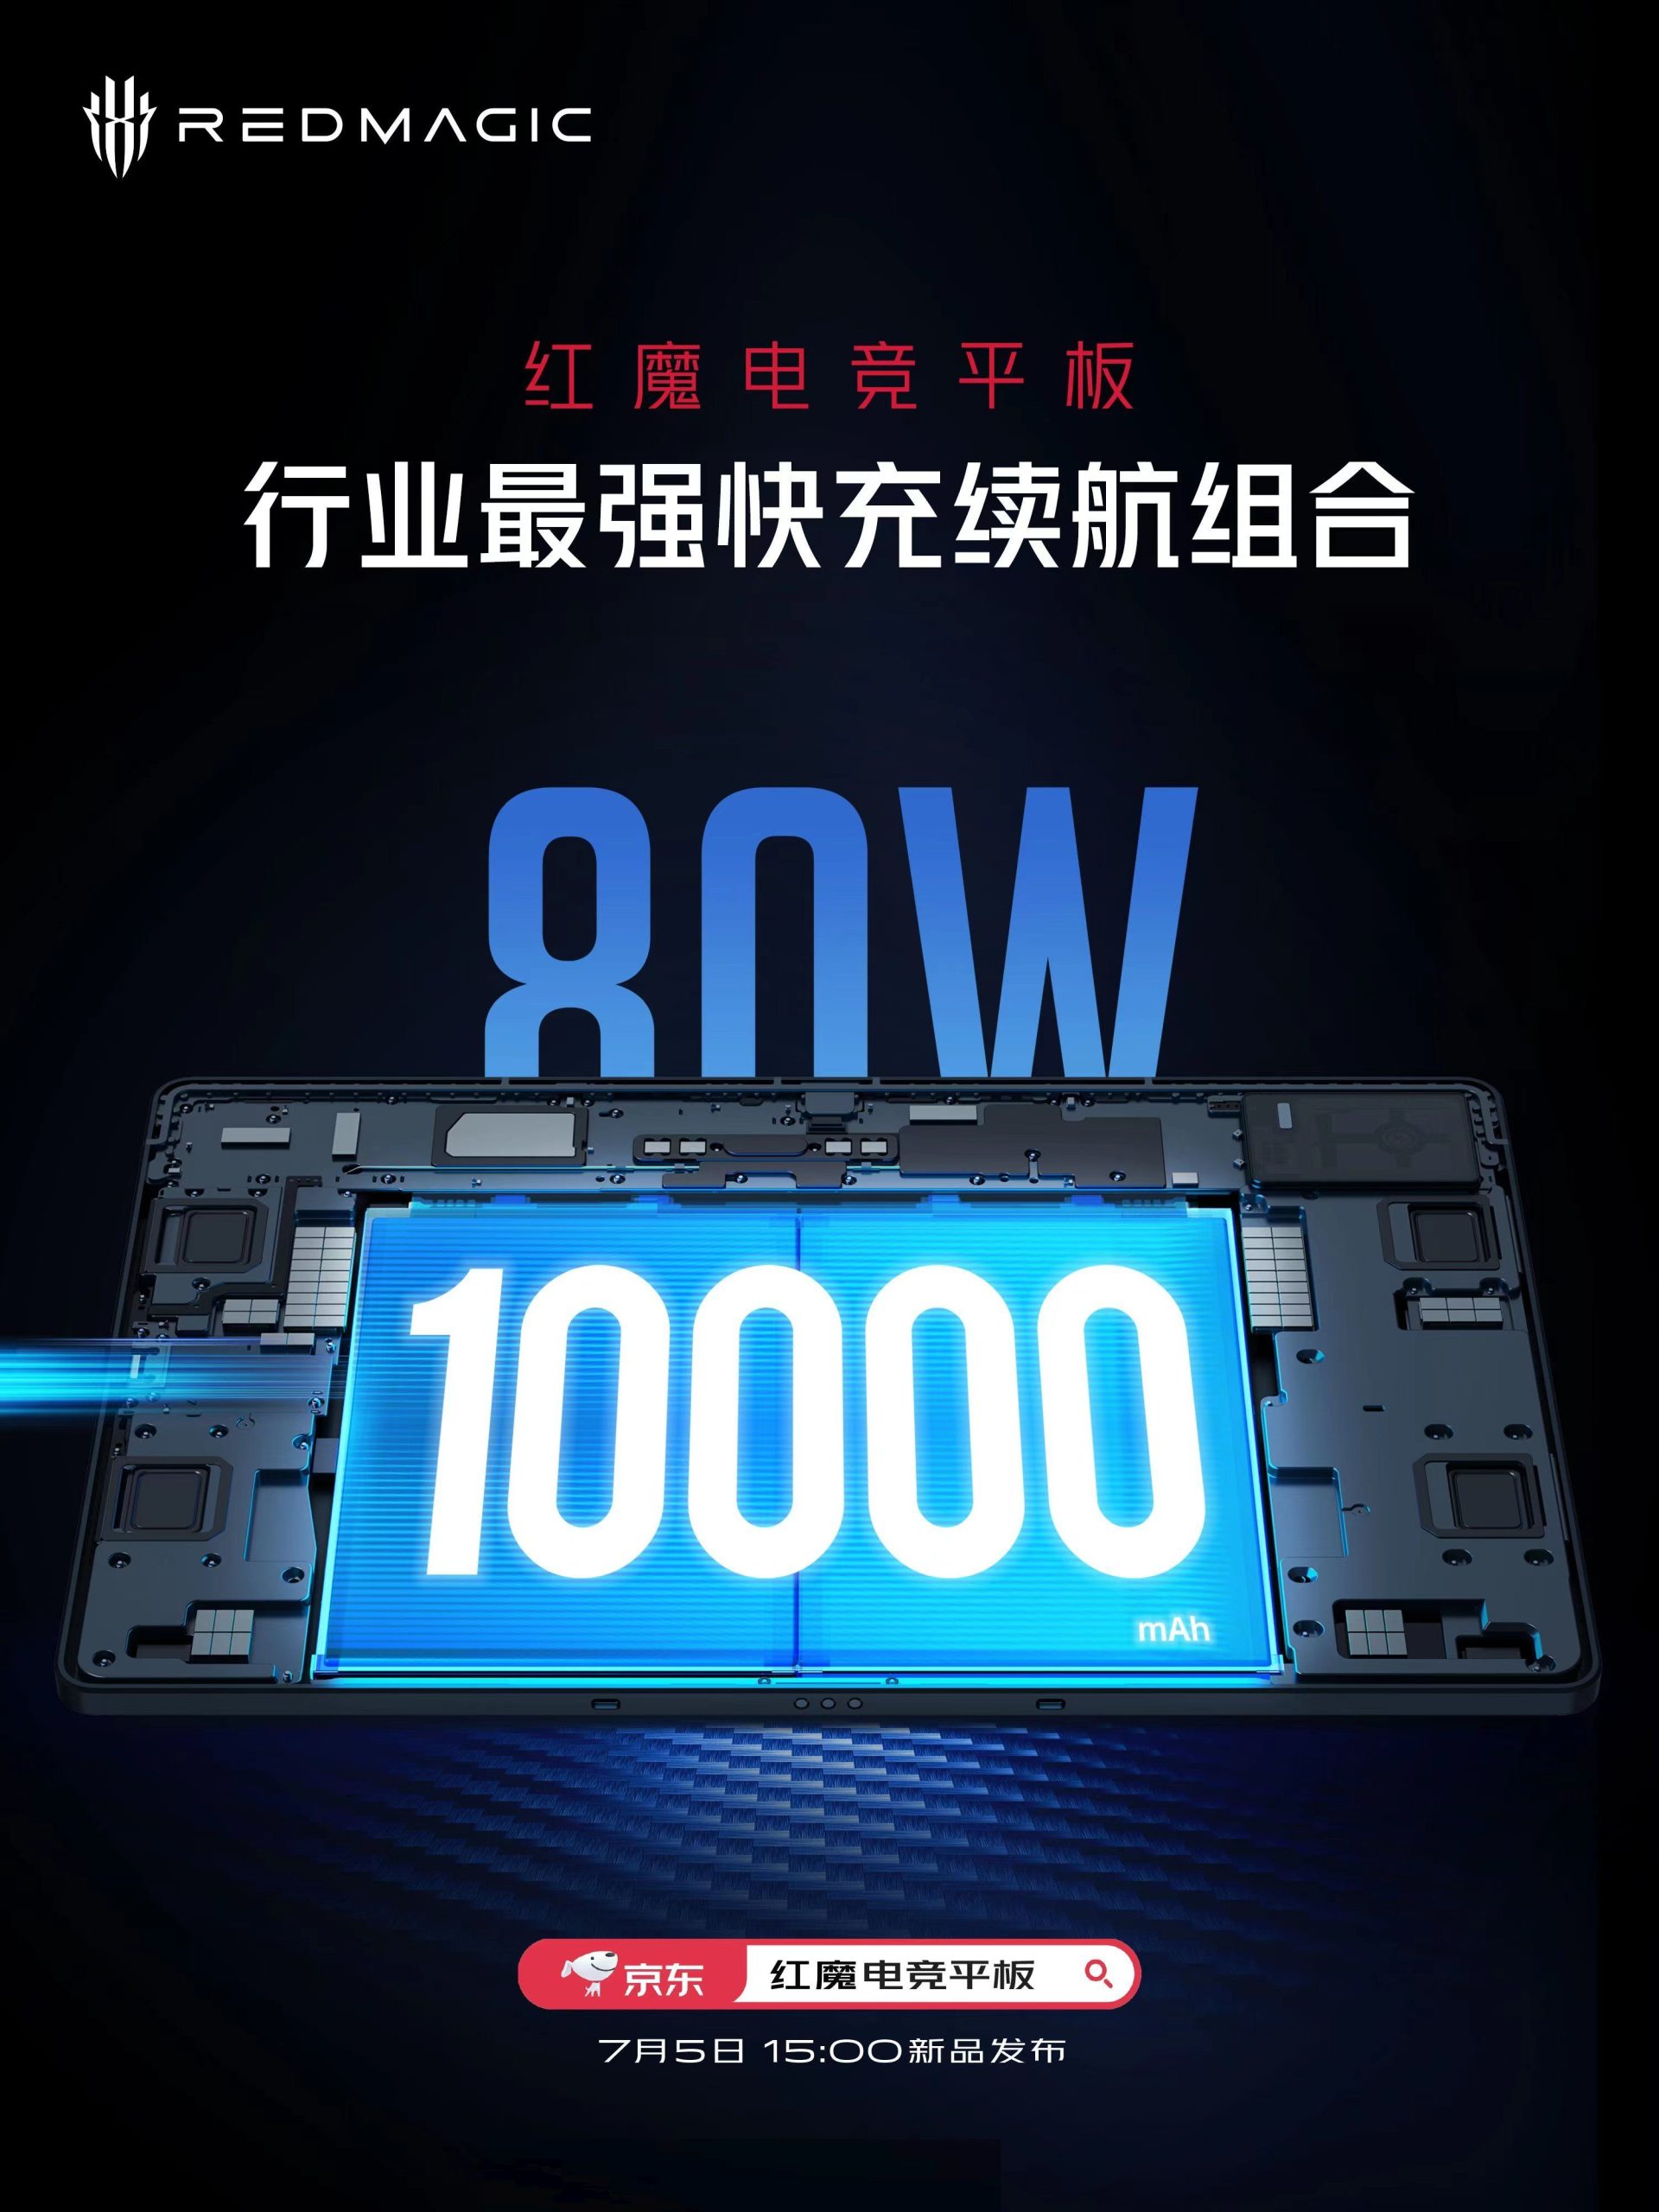 Red Magic Gaming Tablet 10000mAh battery